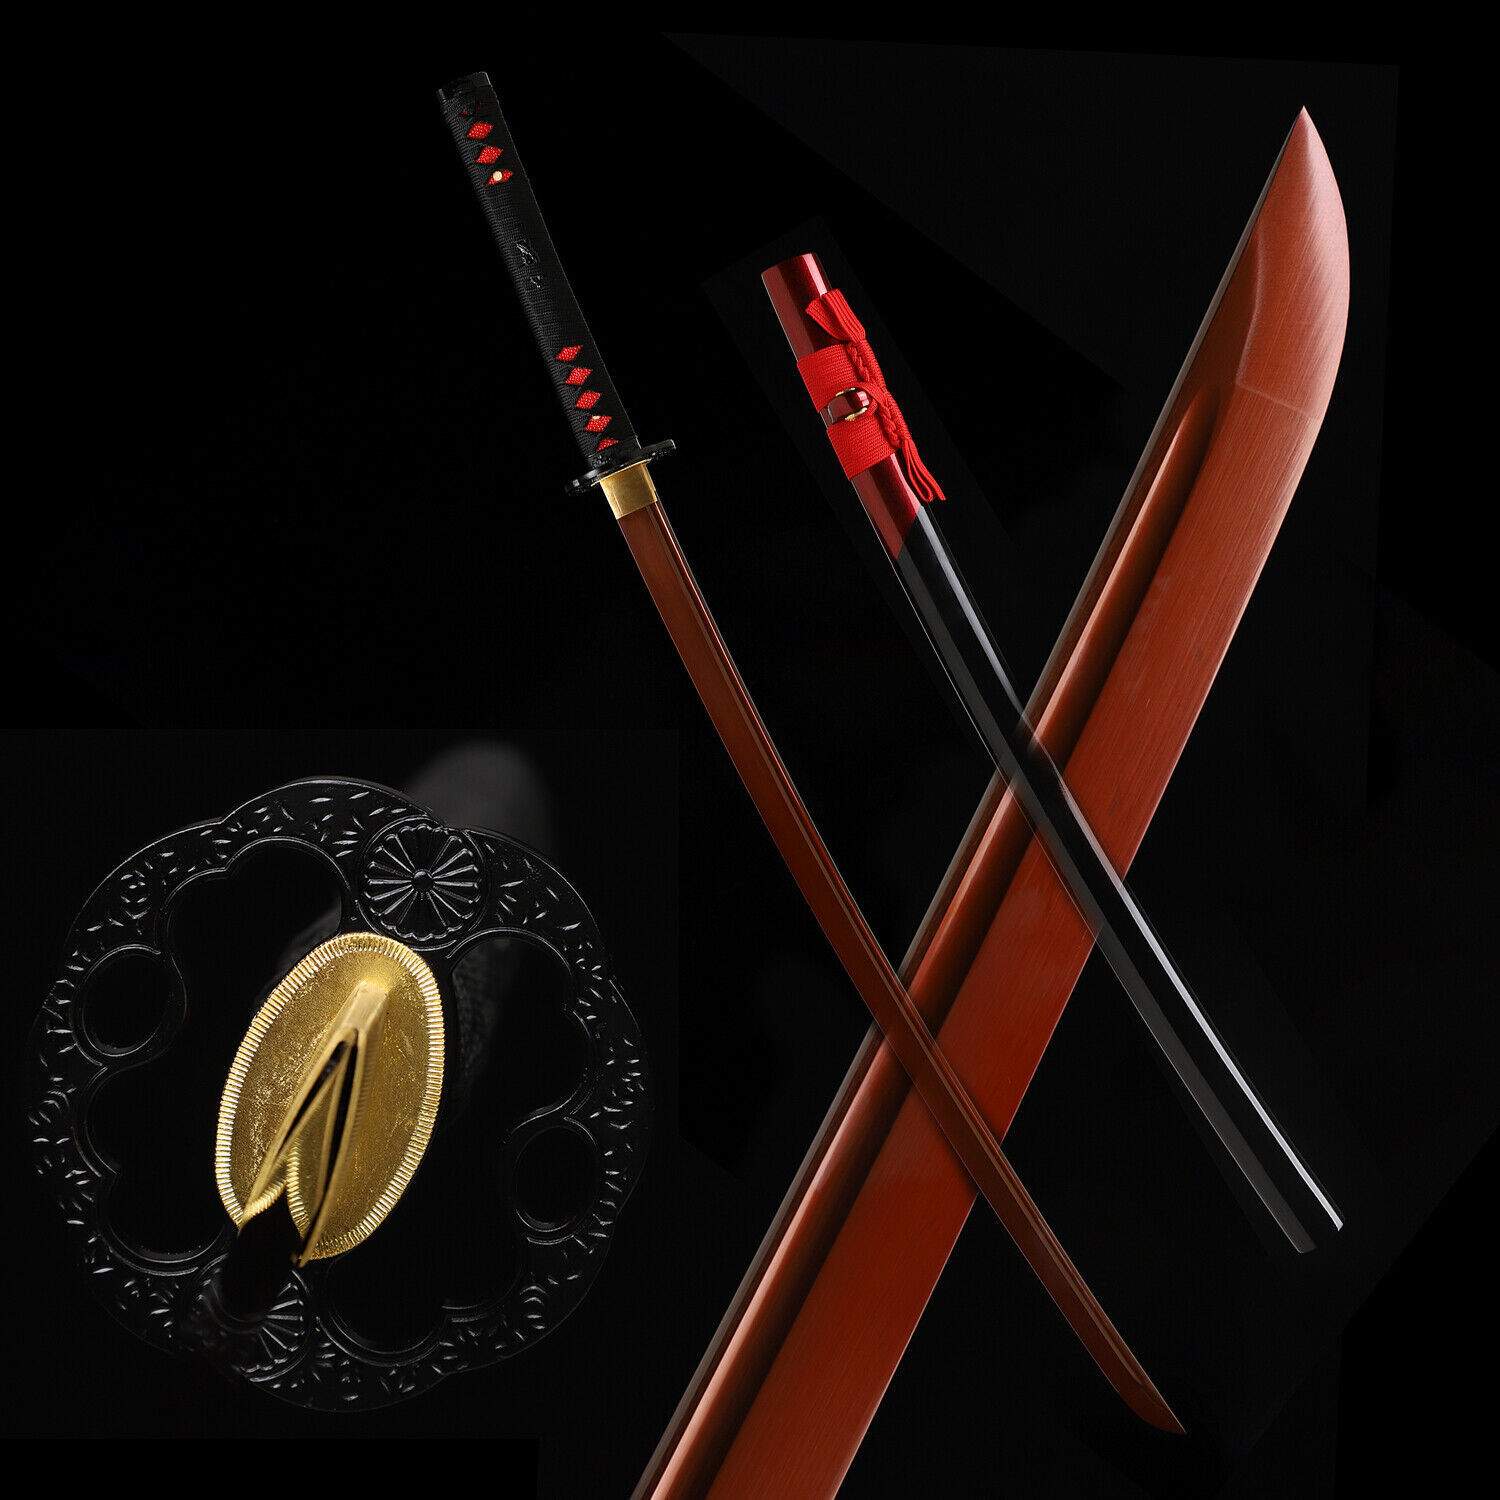 Handmade battle Ready Katana Sword 9260 Spring Steel Red Blade Sharp Full Tang